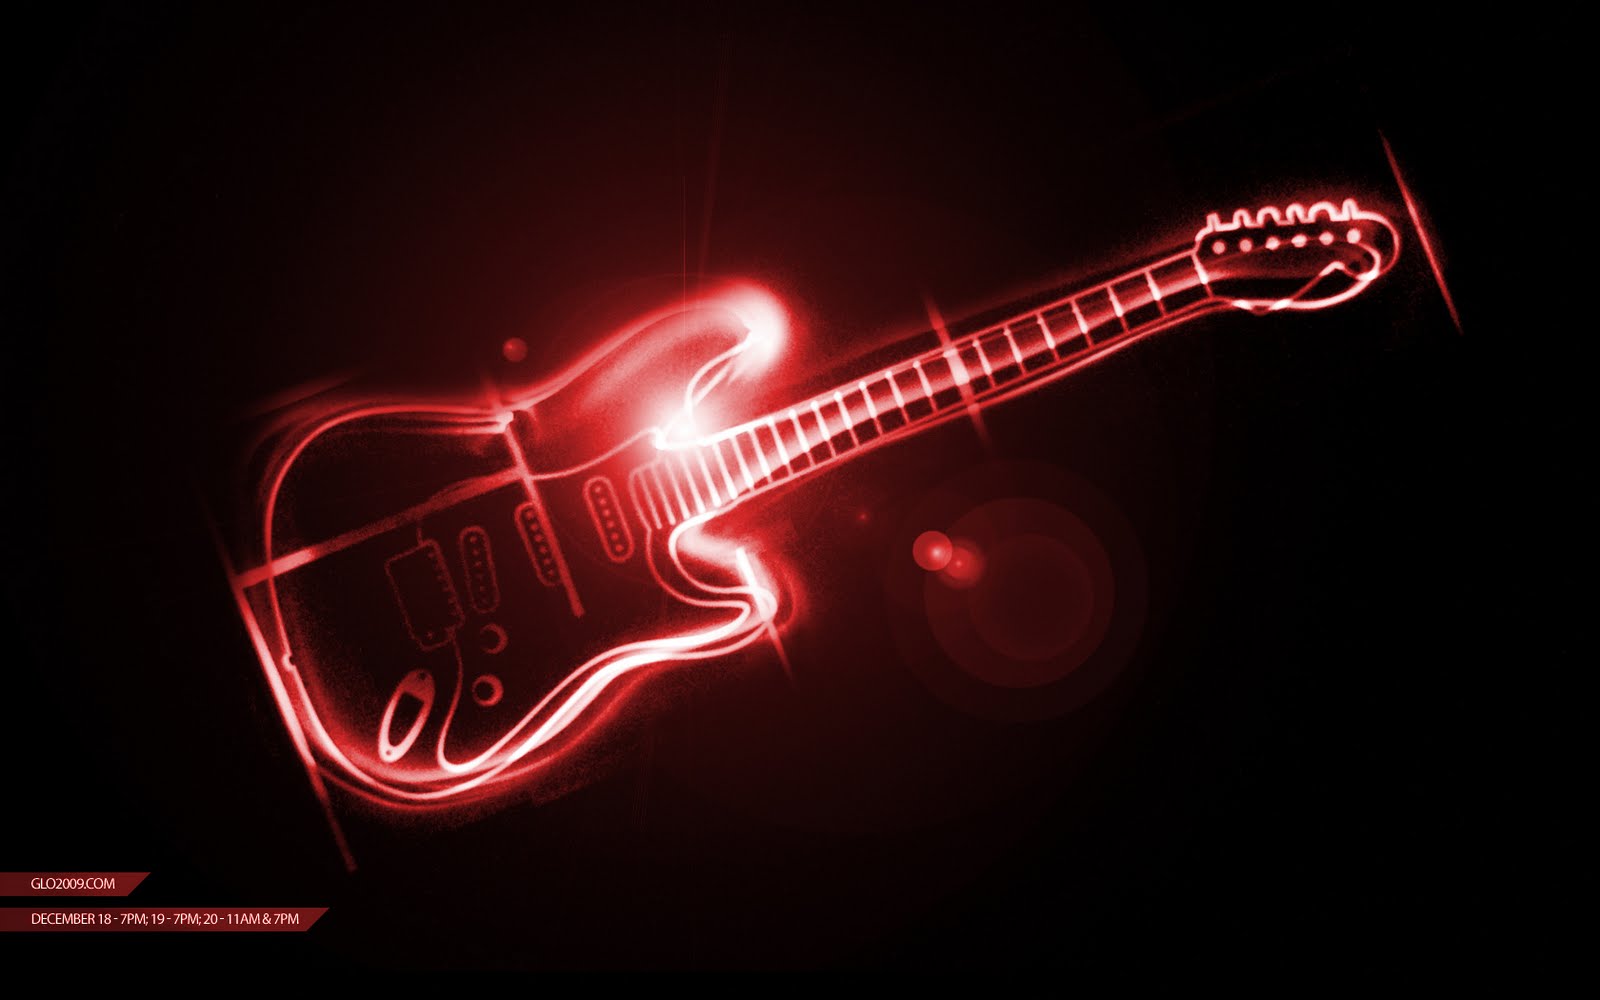 guitarra wallpaper,gitarre,elektrische gitarre,musikinstrument,gezupfte saiteninstrumente,rot